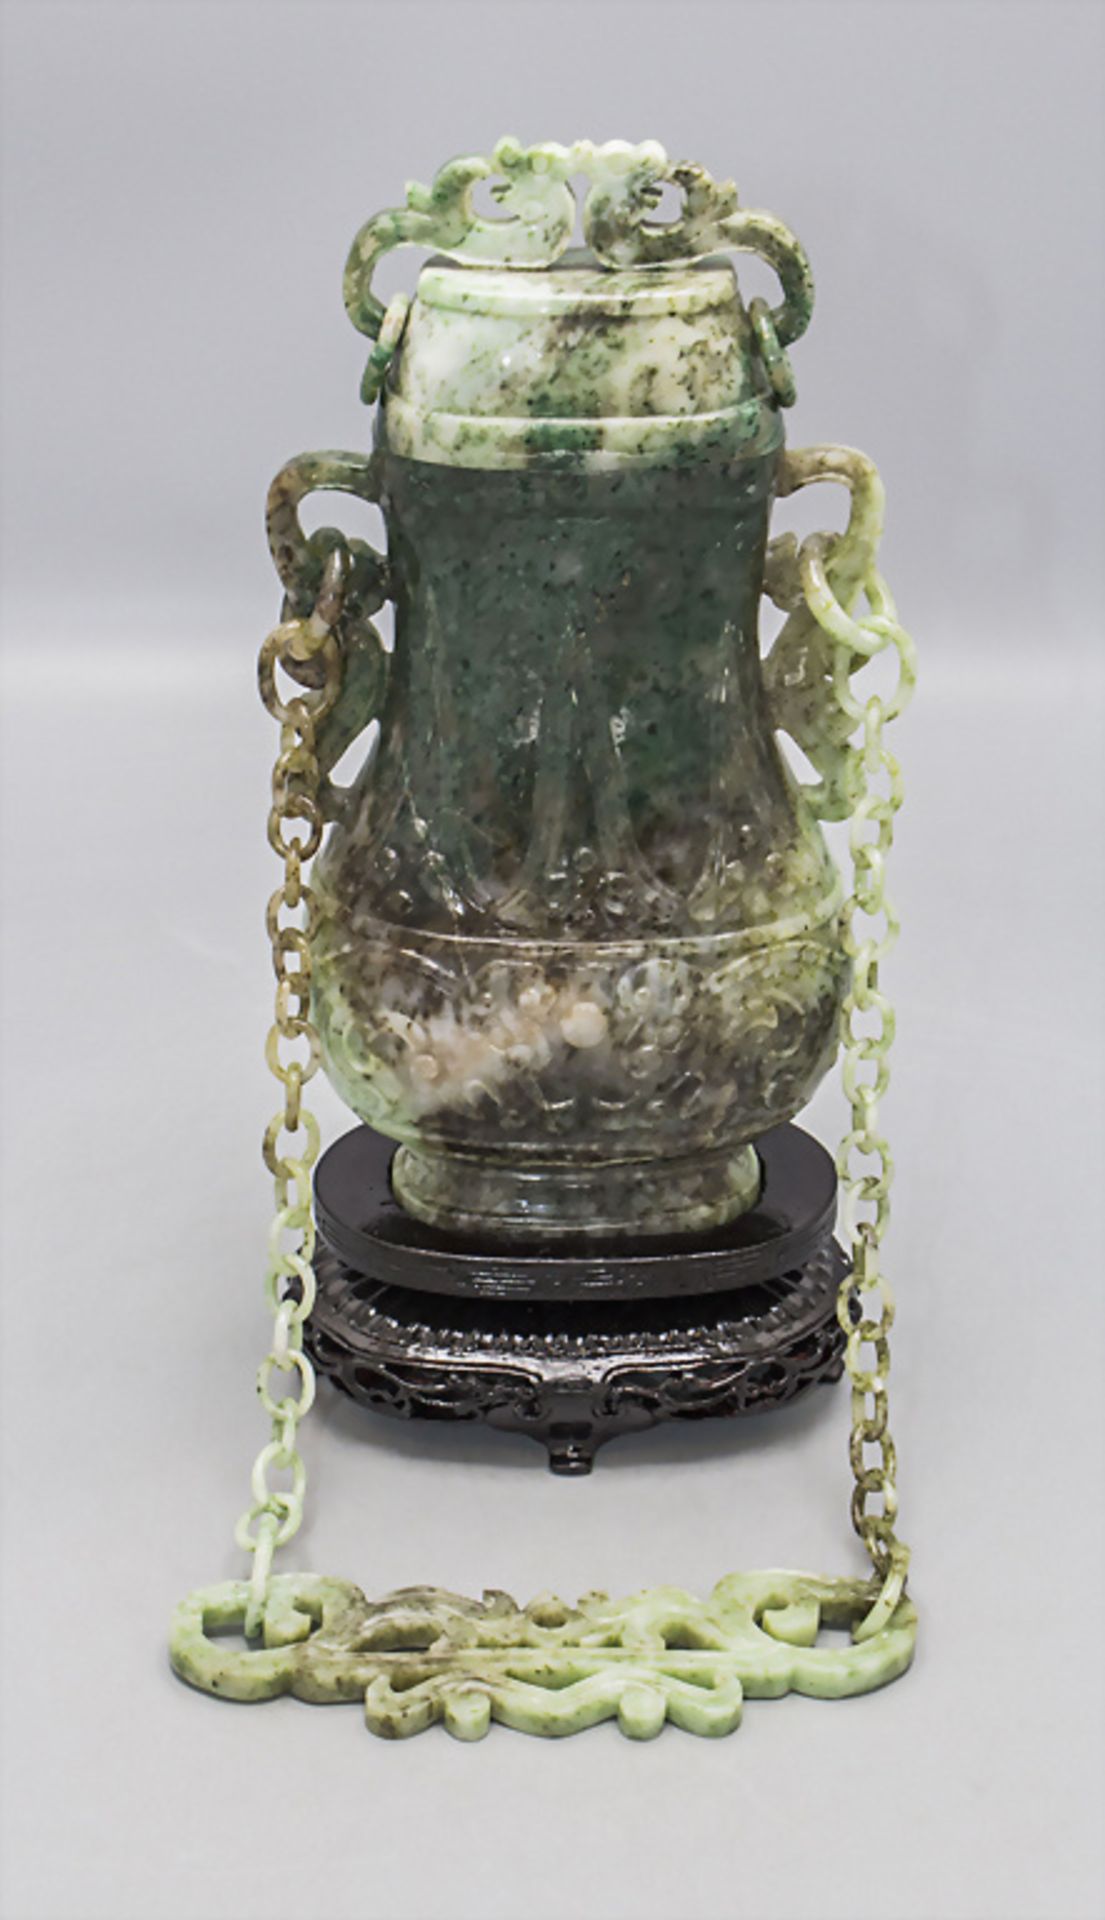 Feine Jade-Deckelvase an Hängekette / A fine jade lidded vase on a chain, China, um 1920 - Bild 10 aus 10